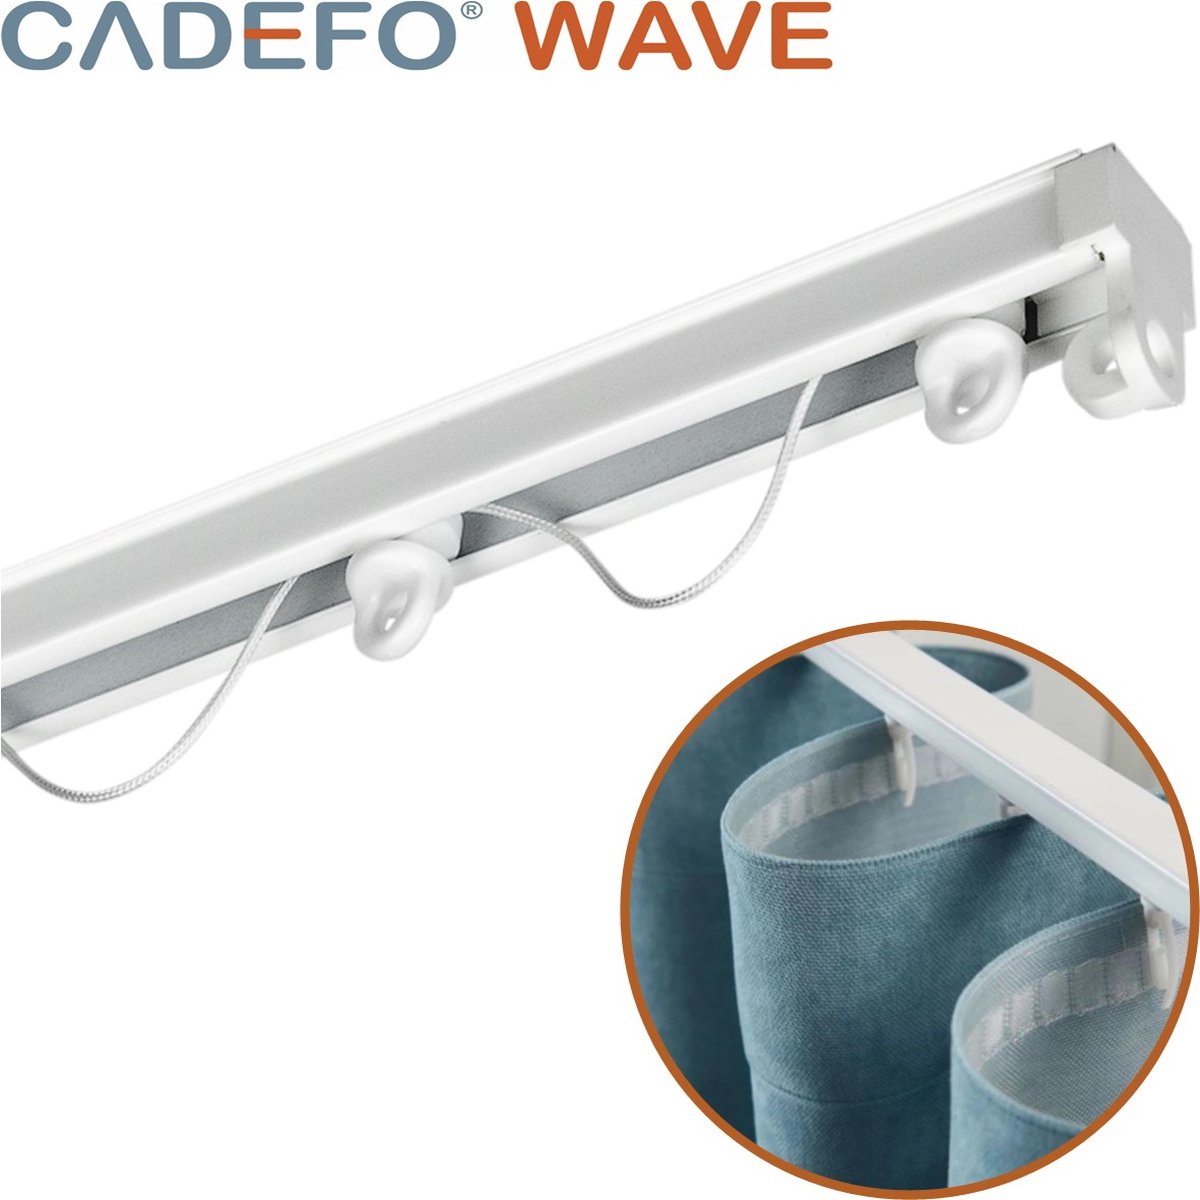 CADEFO WAVE (451 - 500 cm) Gordijnrails - Compleet op maat! - UIT 1 STUK - Leverbaar tot 6 meter - Plafondbevestiging - Lengte 487 cm